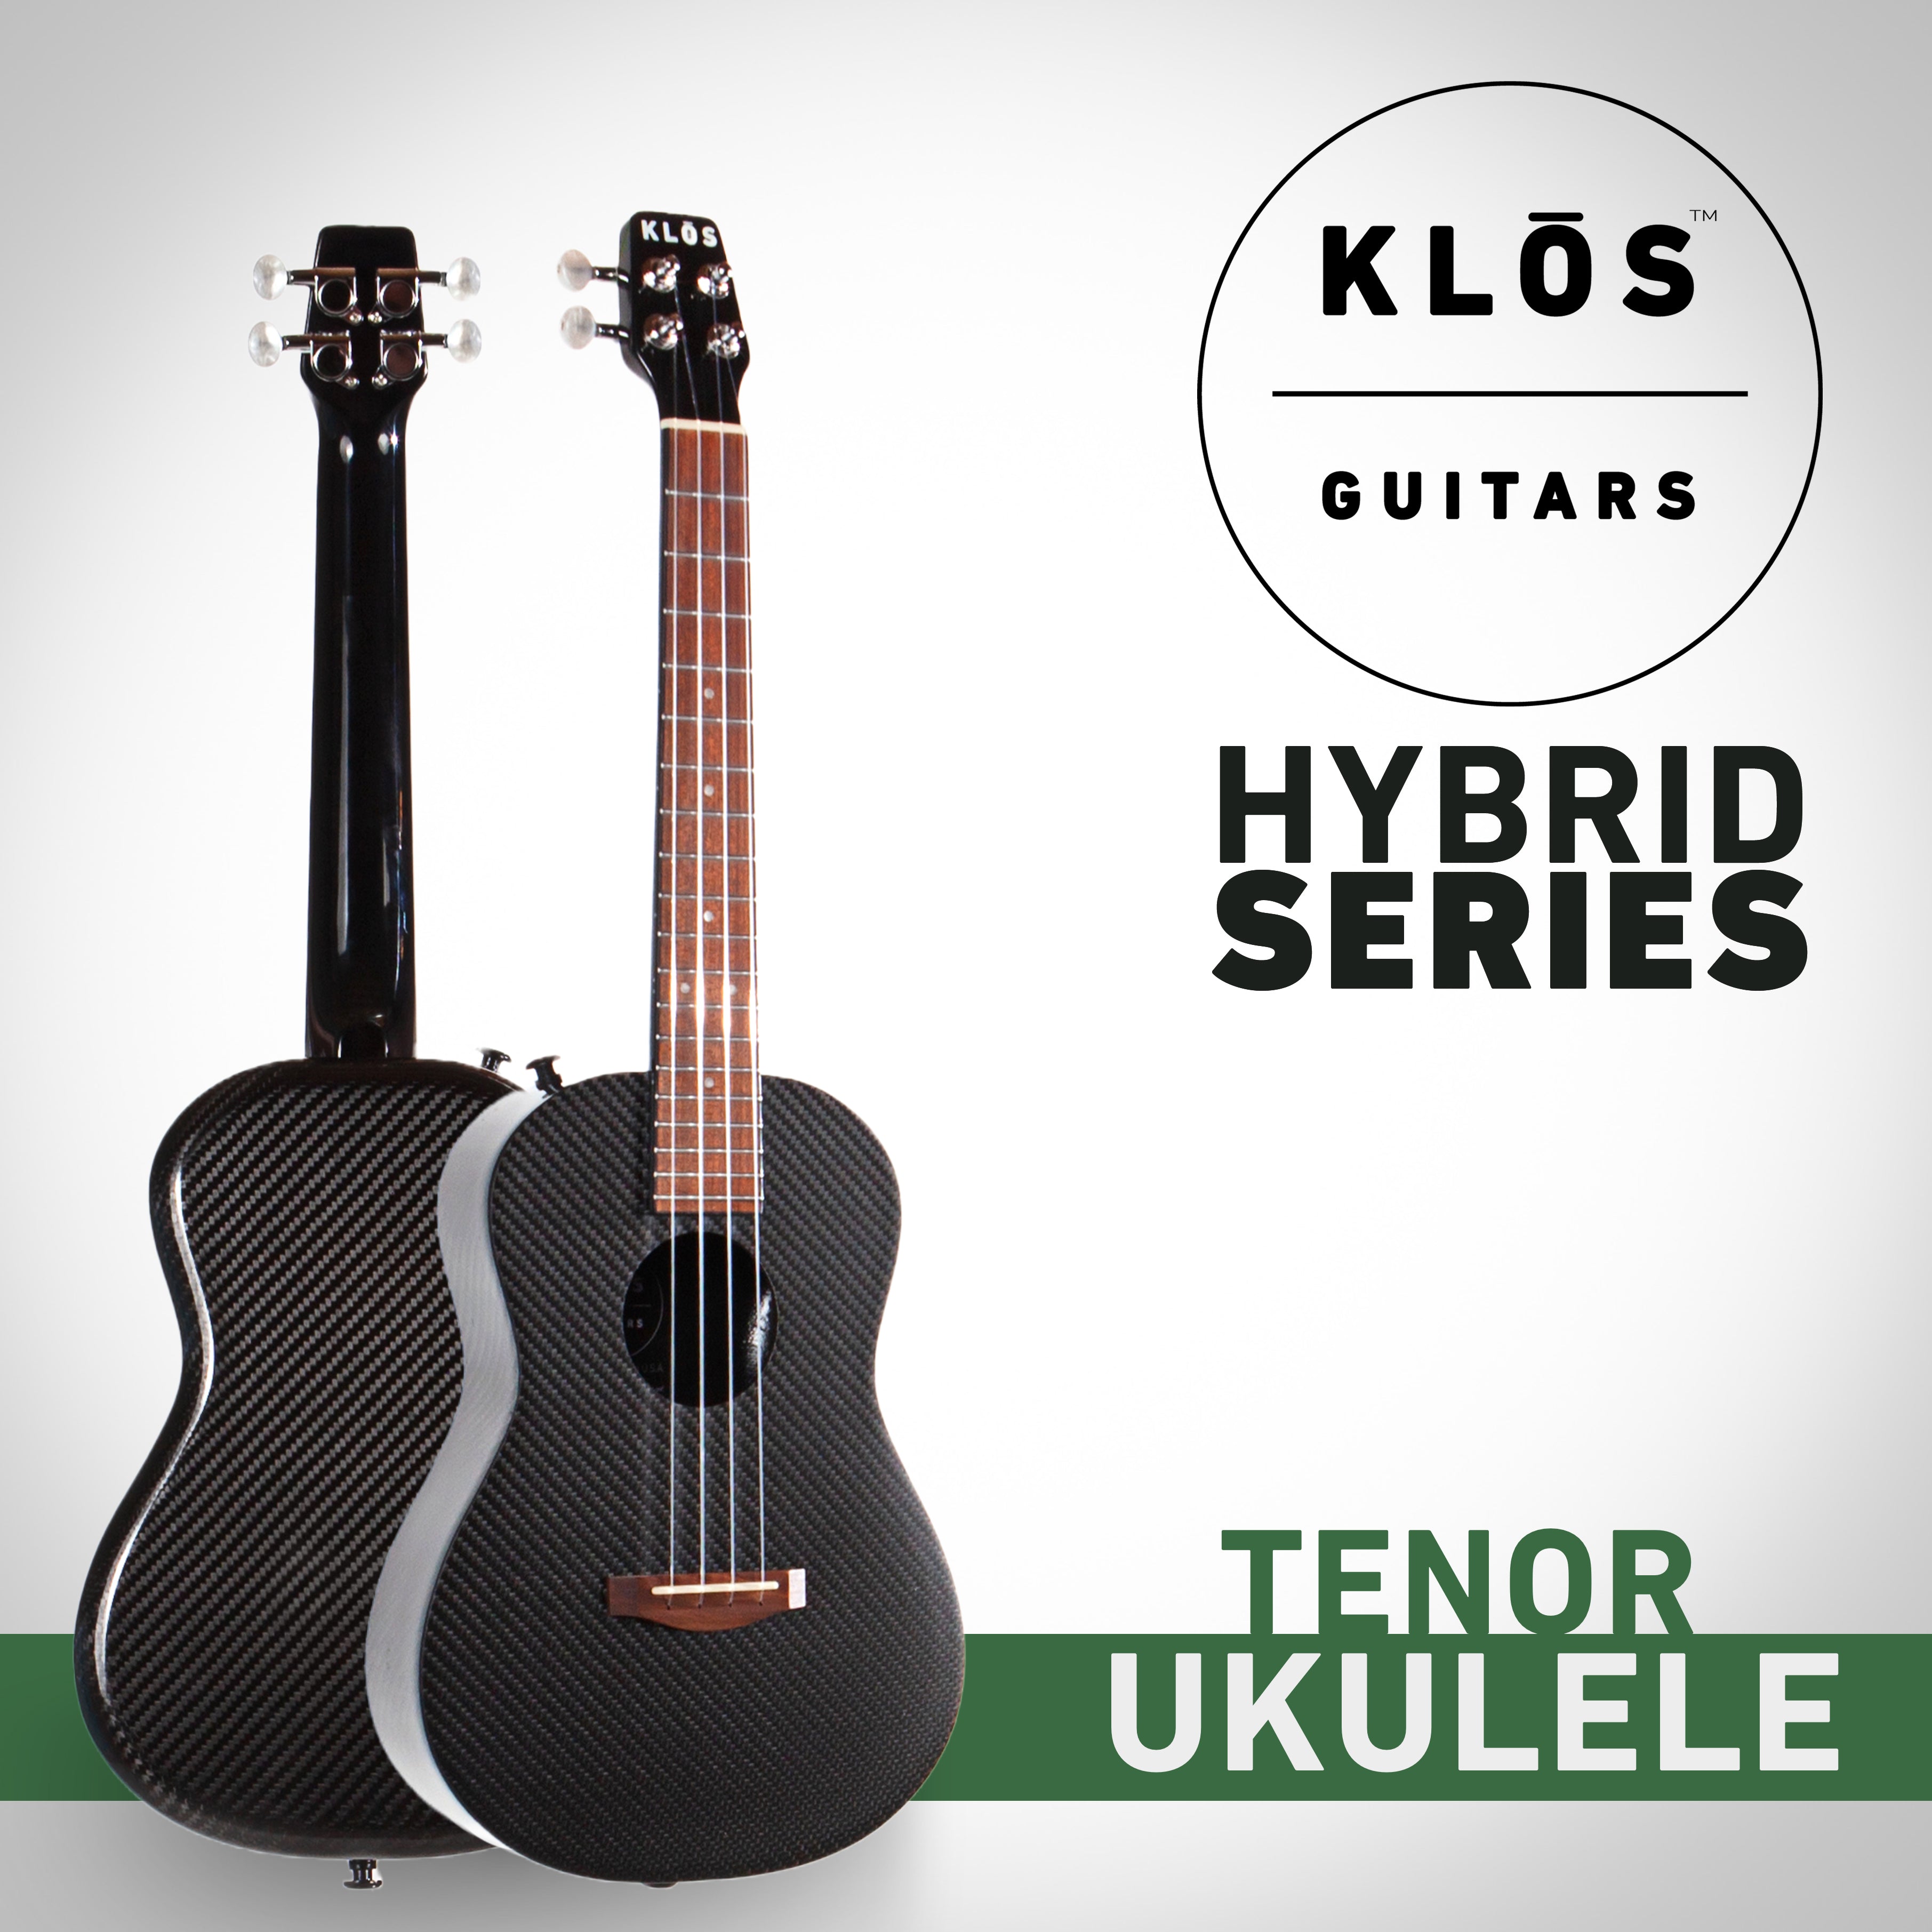 Hybrid Tenor Ukulele – Guitars